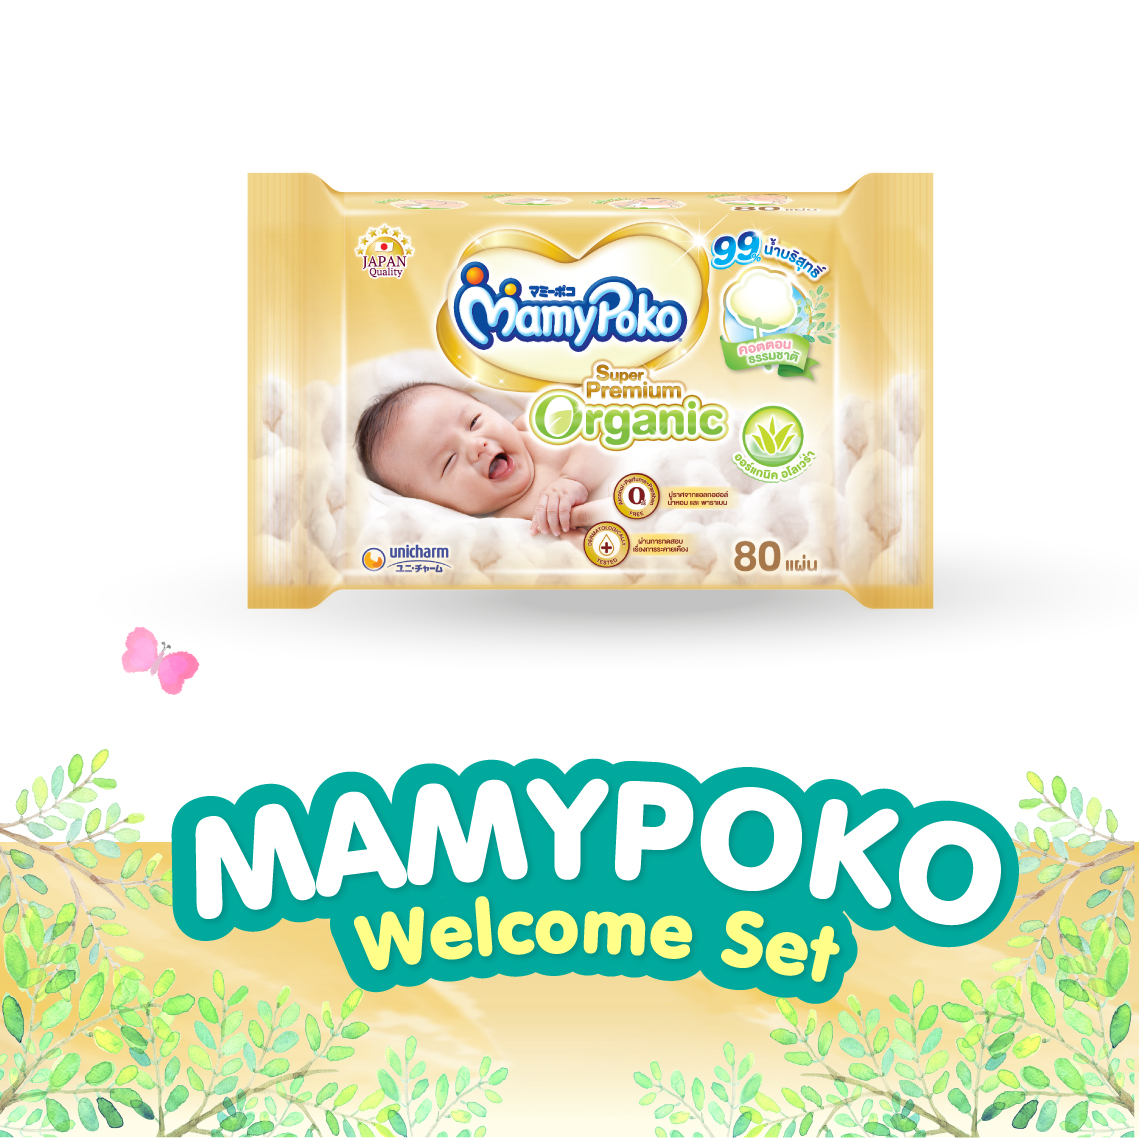 [ส่งฟรี] ชุดของขวัญต้อนรับคุณแม่คนใหม่ MamyPoko Welcome New Mom Gift Set (ผ้าอ้อม MamyPoko Tape Super Premium Organic NB, S + ผ้านุ่มชุ่มชื่น MamyPoko Wipes Box + ตุ๊กตา Poko Chan